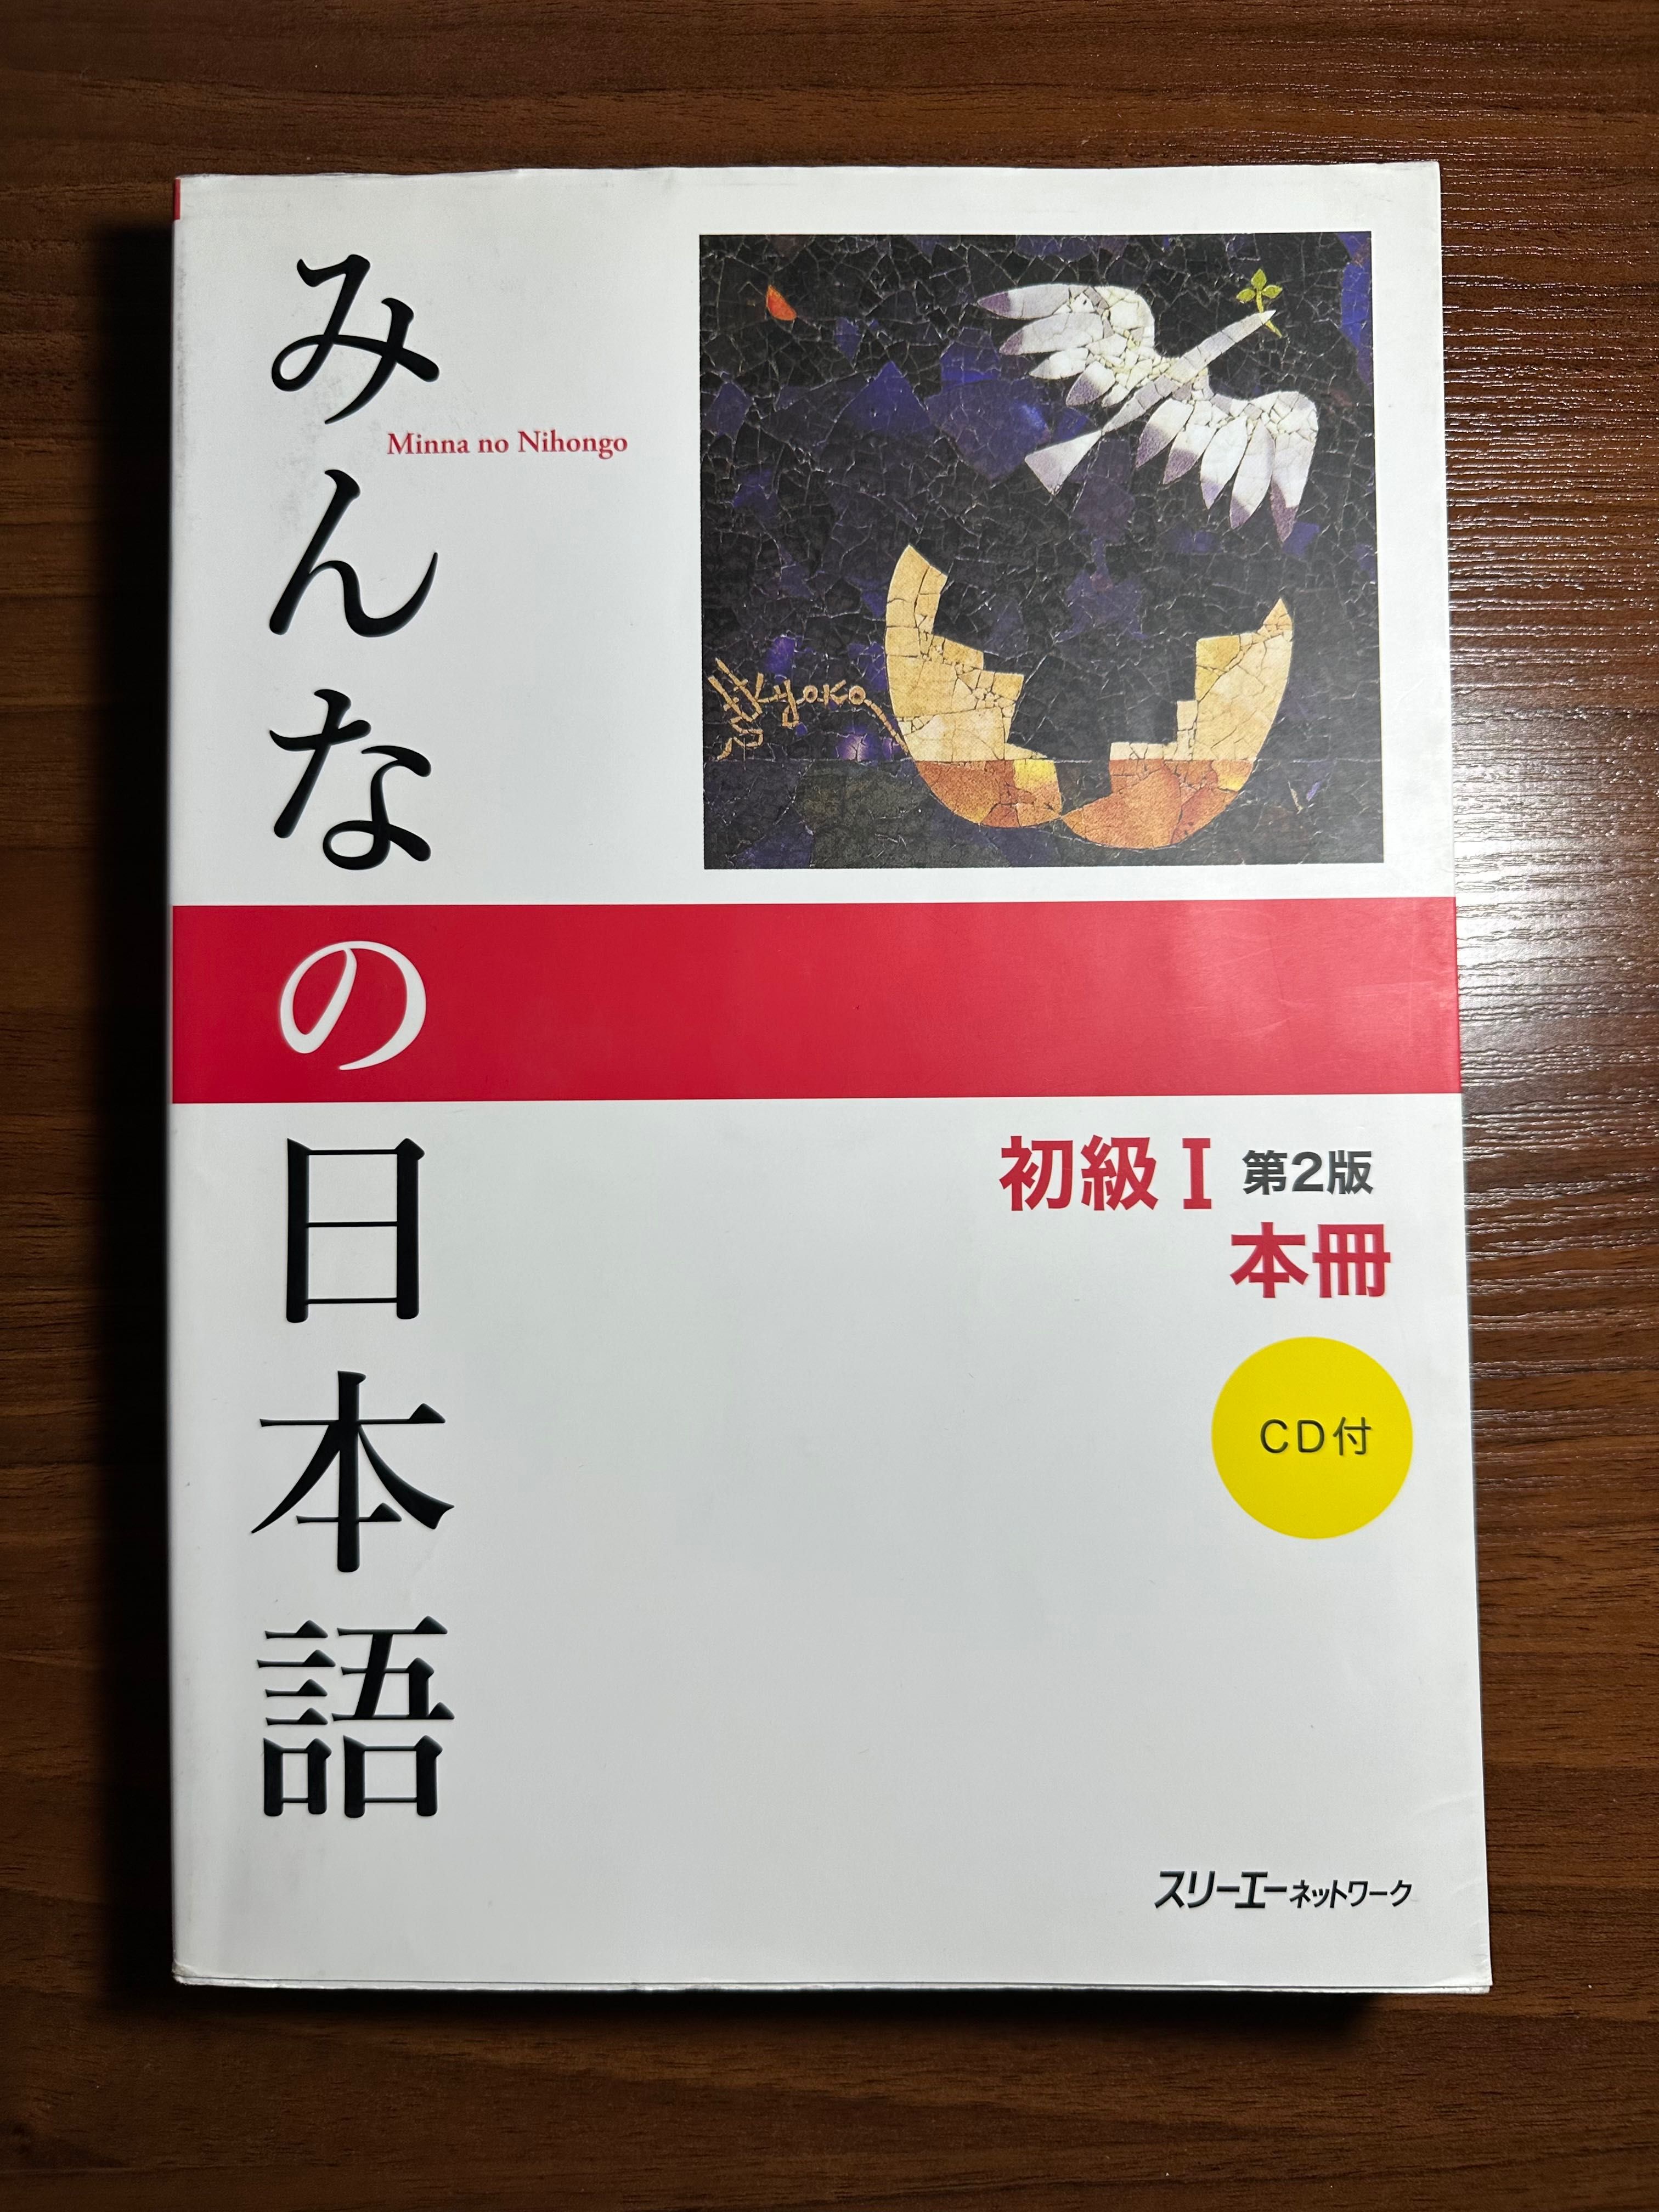 Учебник японского языка